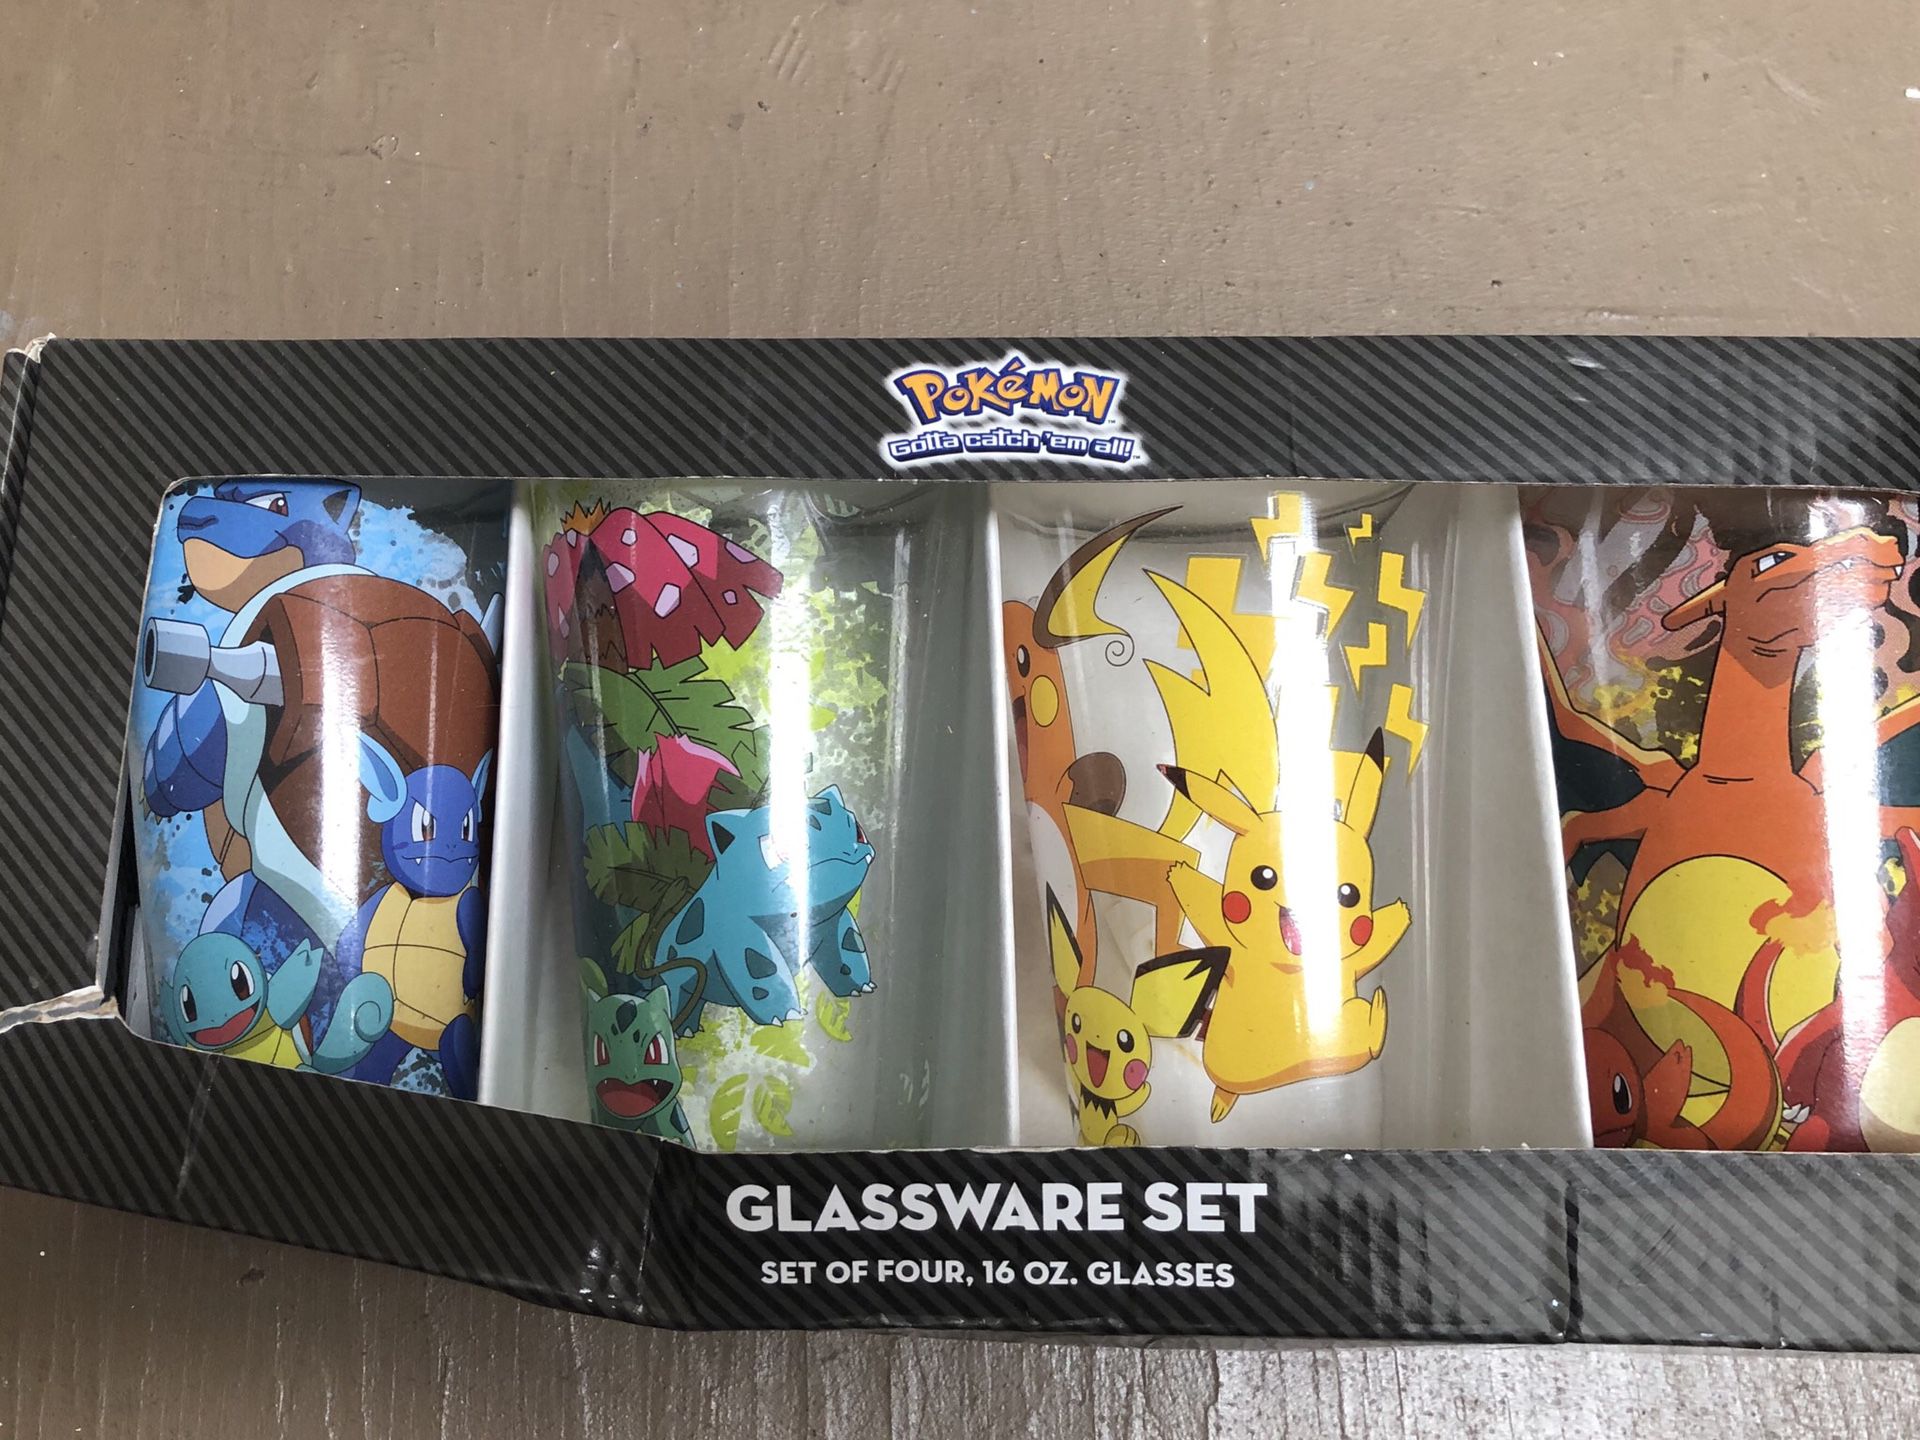 Brand new Pokemon Glasses